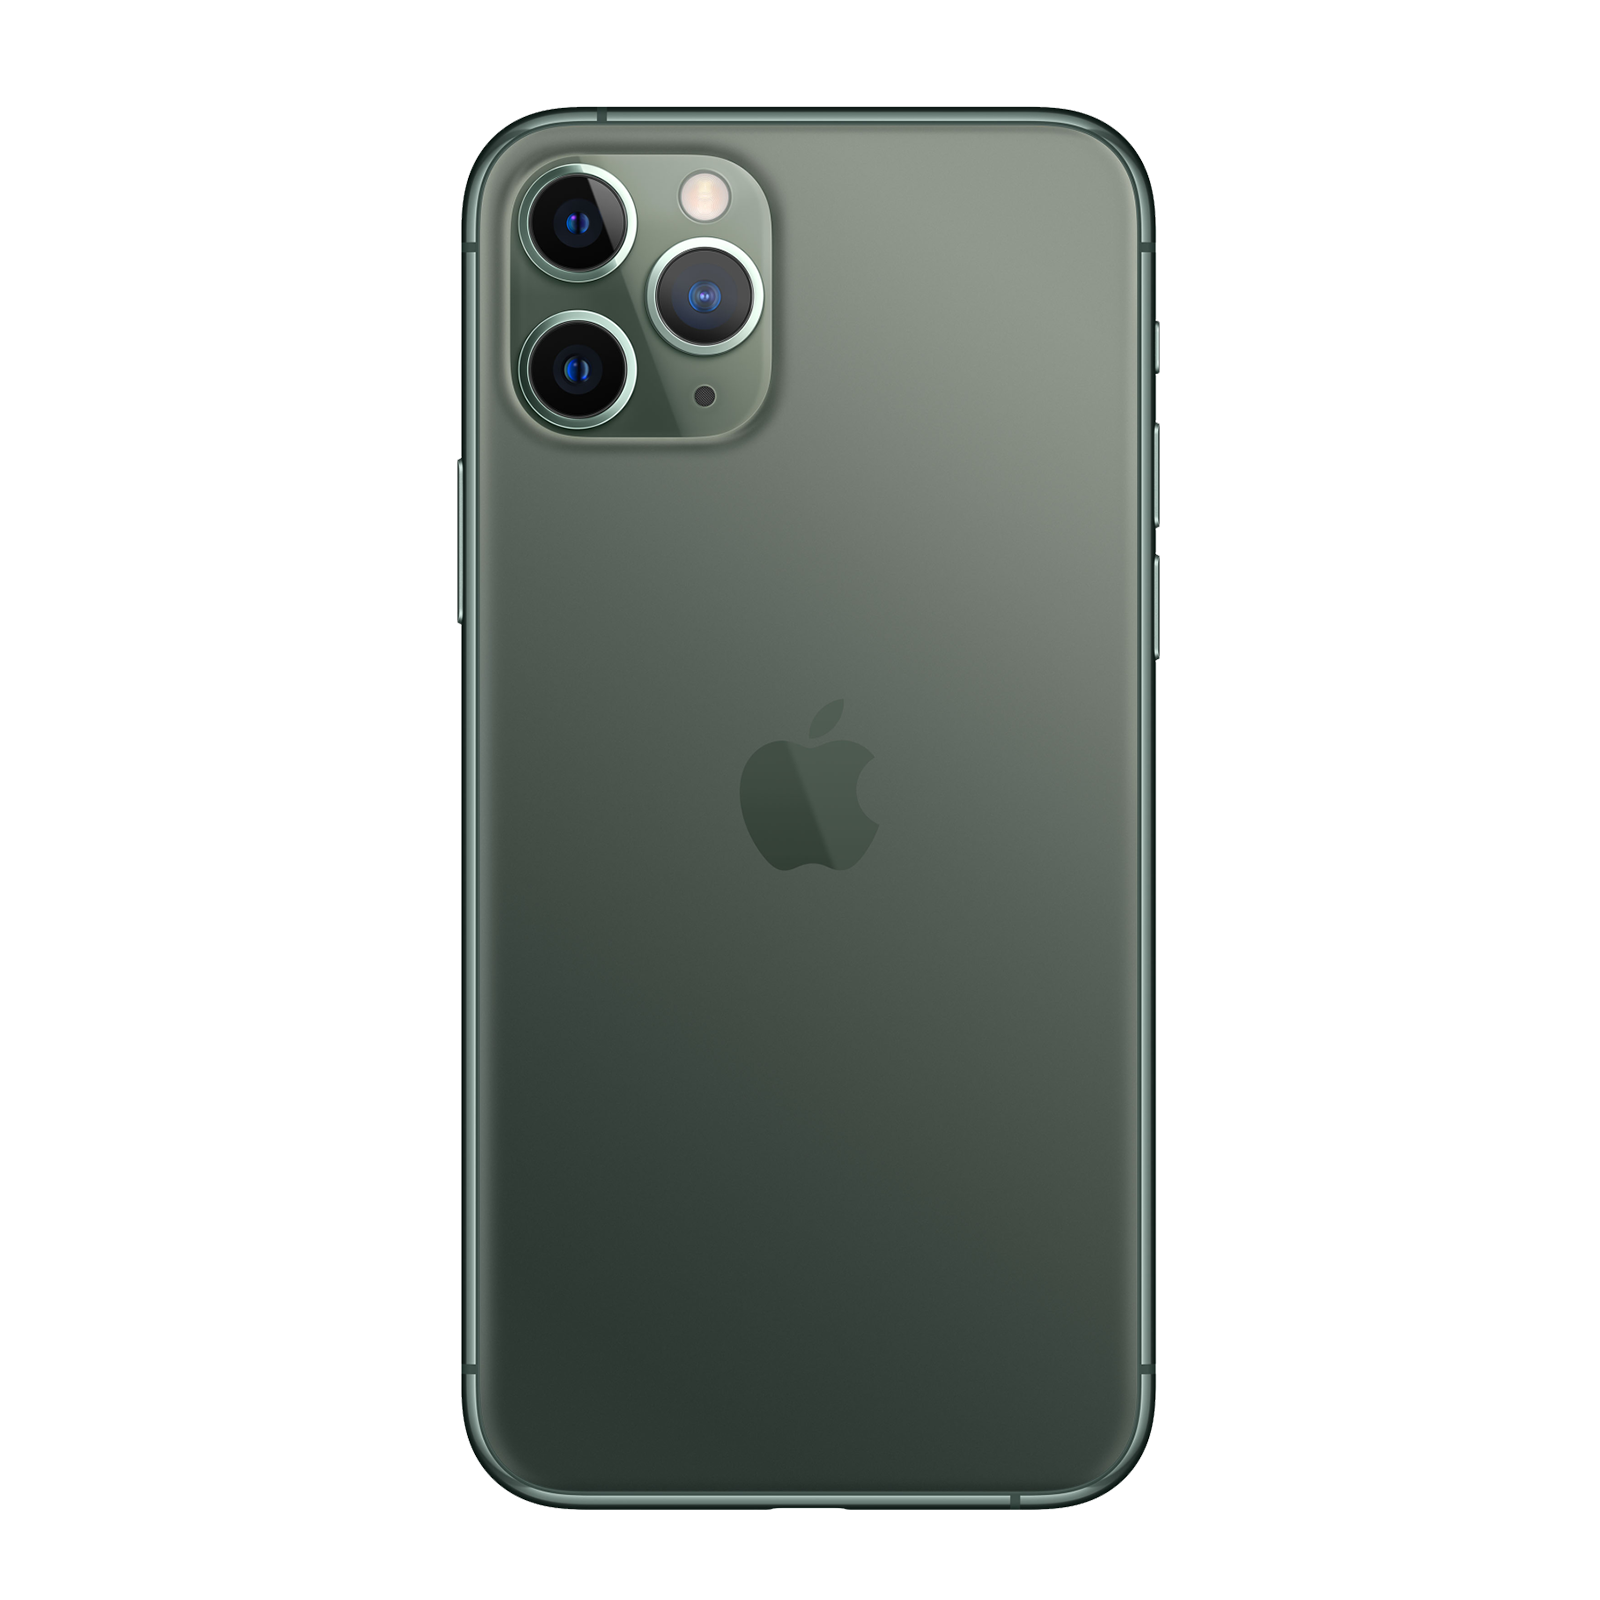 iPhone 11 Pro Max 256 Go - Vert Nuit - Débloqué - Etat correct